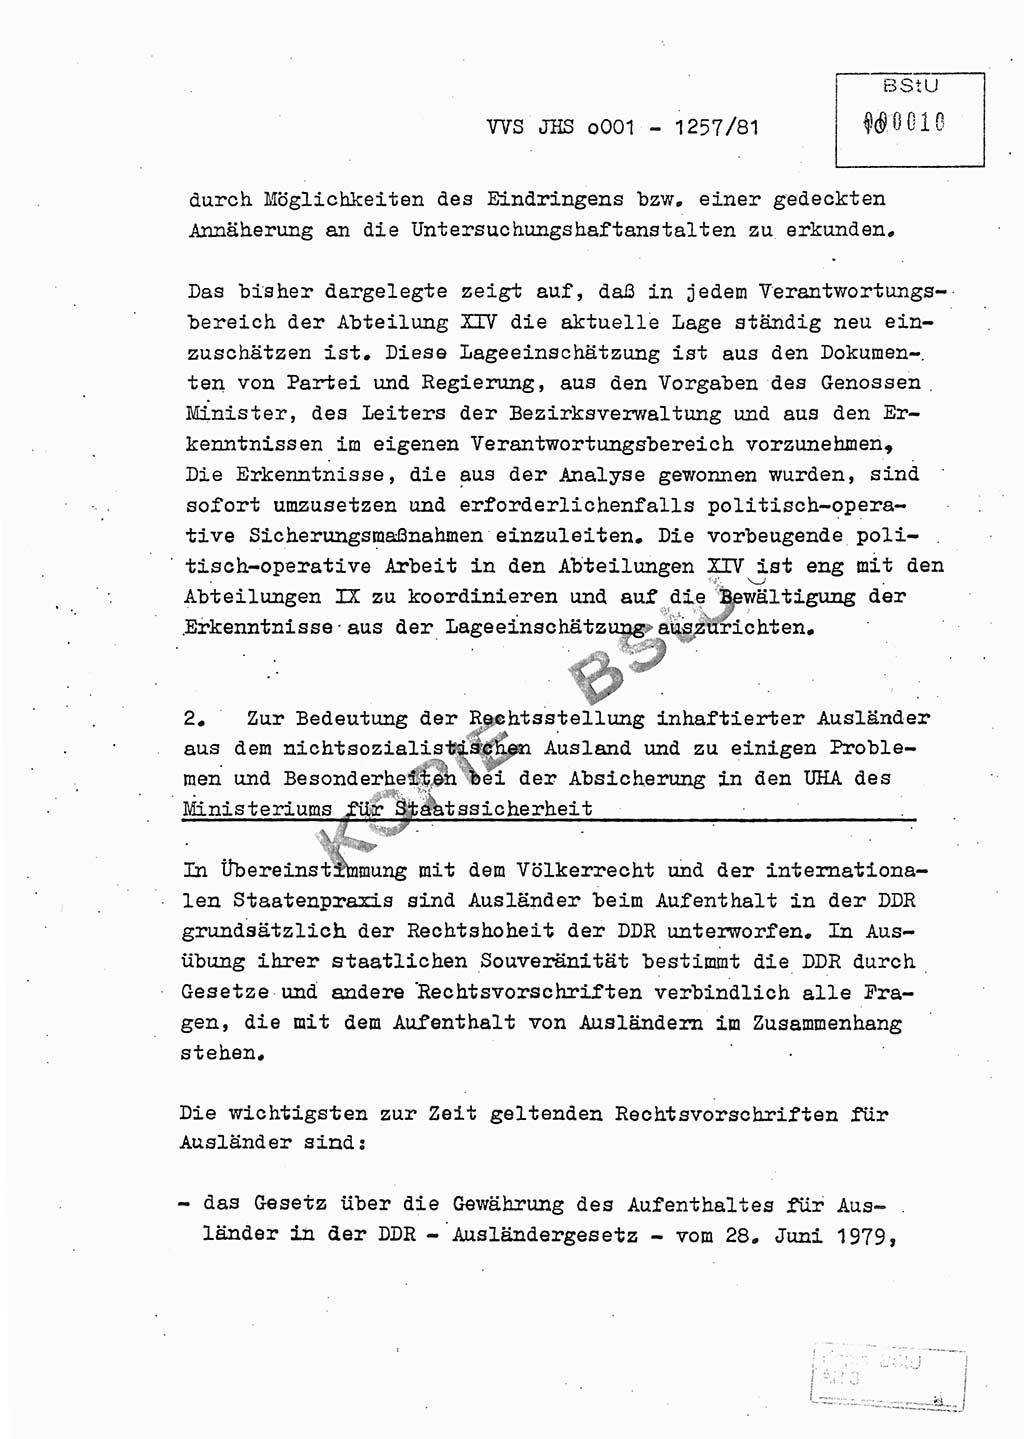 Fachschulabschlußarbeit Unterleutnant Dieter Möller (BV Rst. Abt. ⅩⅣ), Ministerium für Staatssicherheit (MfS) [Deutsche Demokratische Republik (DDR)], Juristische Hochschule (JHS), Vertrauliche Verschlußsache (VVS) o001-1257/81, Potsdam 1982, Seite 10 (FS-Abschl.-Arb. MfS DDR JHS VVS o001-1257/81 1982, S. 10)